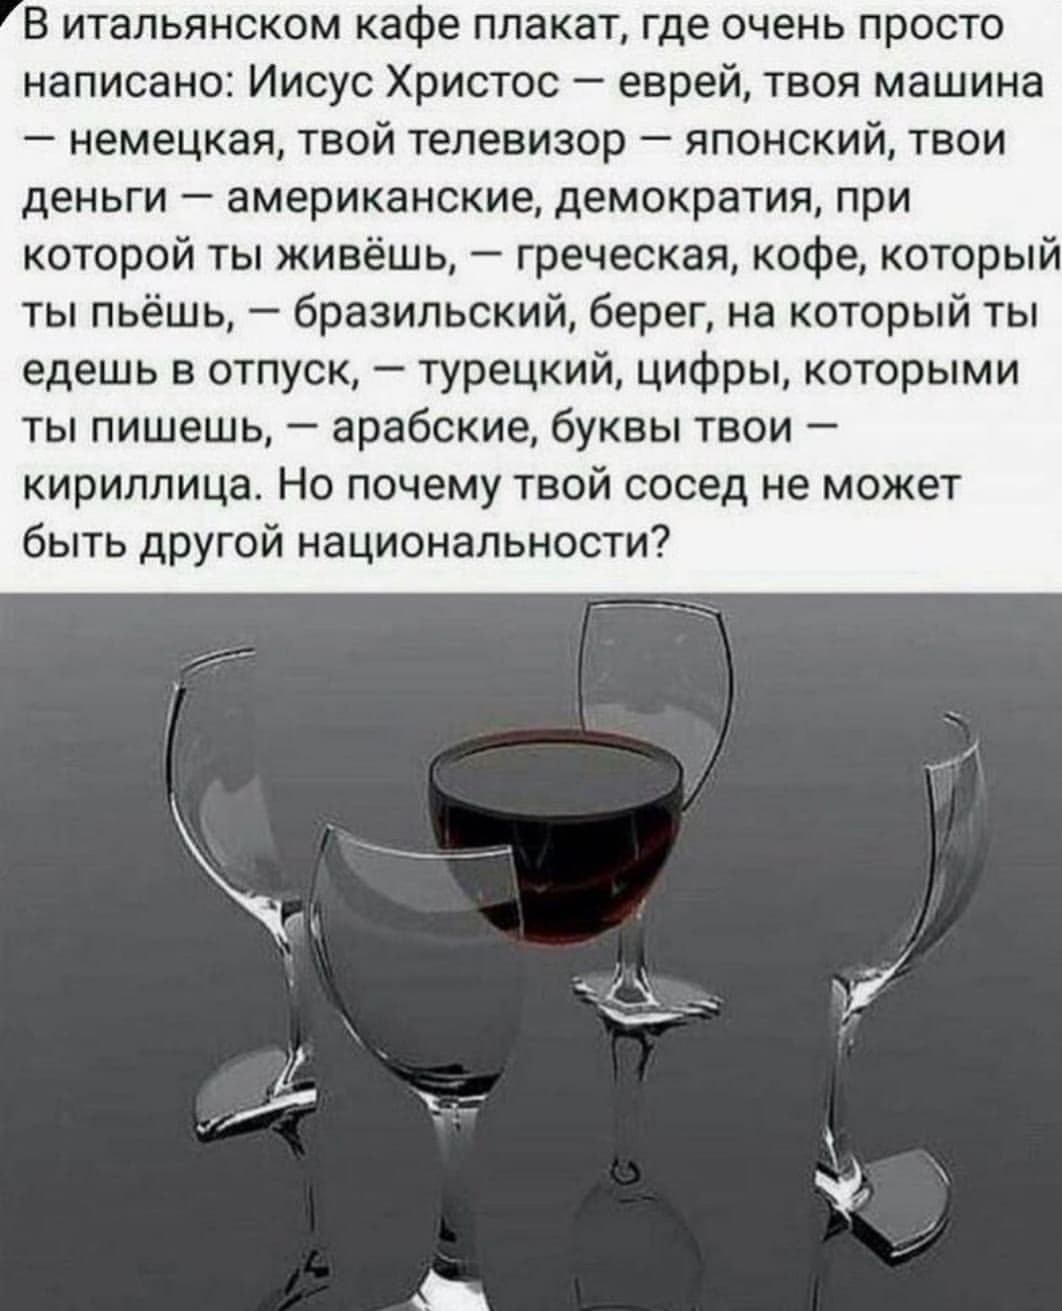 Я хочу чтобы вином наполнялся. Высказывания о вине. Возьми стакан швырни его. Стихи о вине. Высказывания про стаканы.